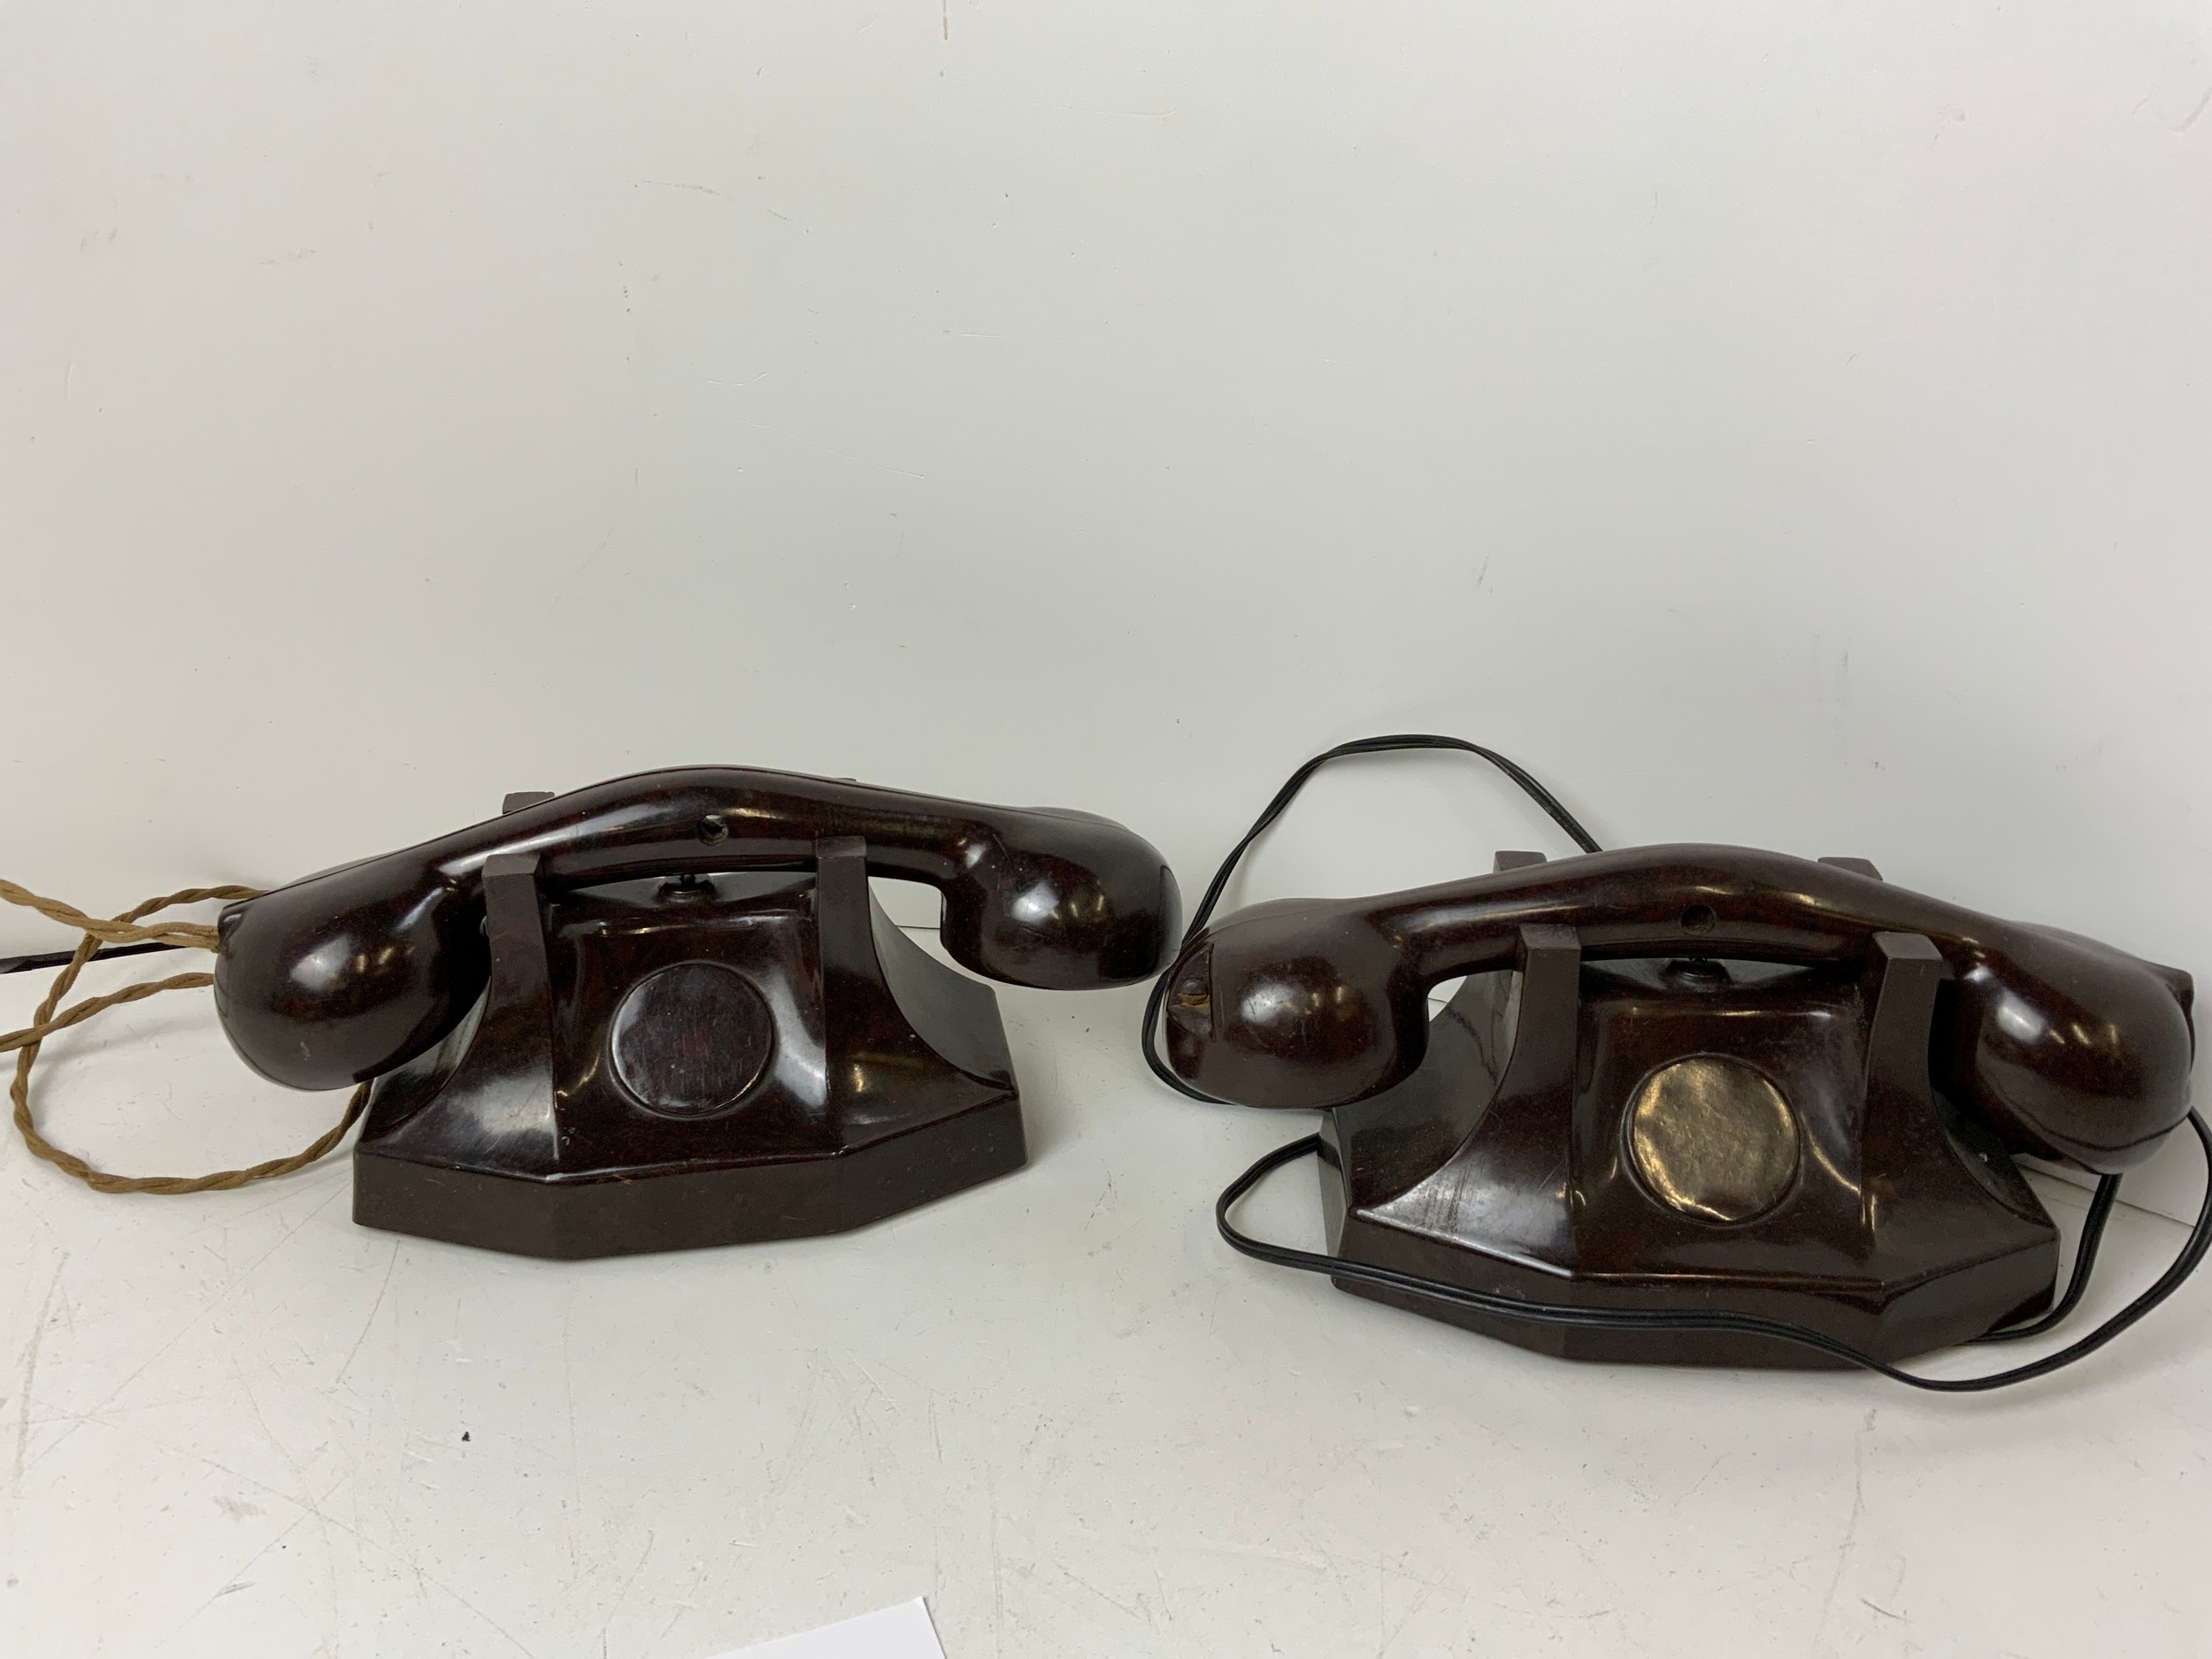 2x Art Deco Bakelite Phones